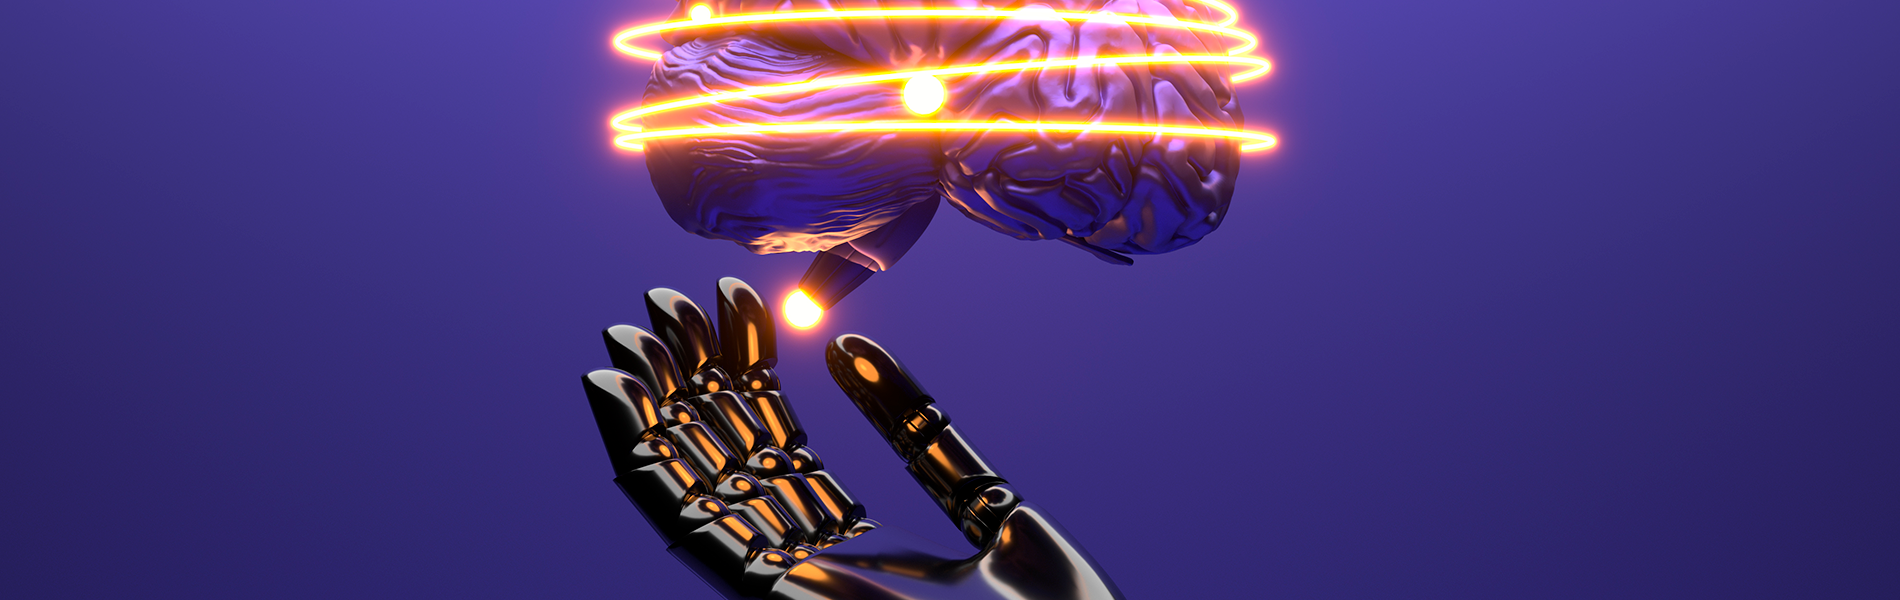 Foto de cérebro artificial pairando sobre mão robô aberta